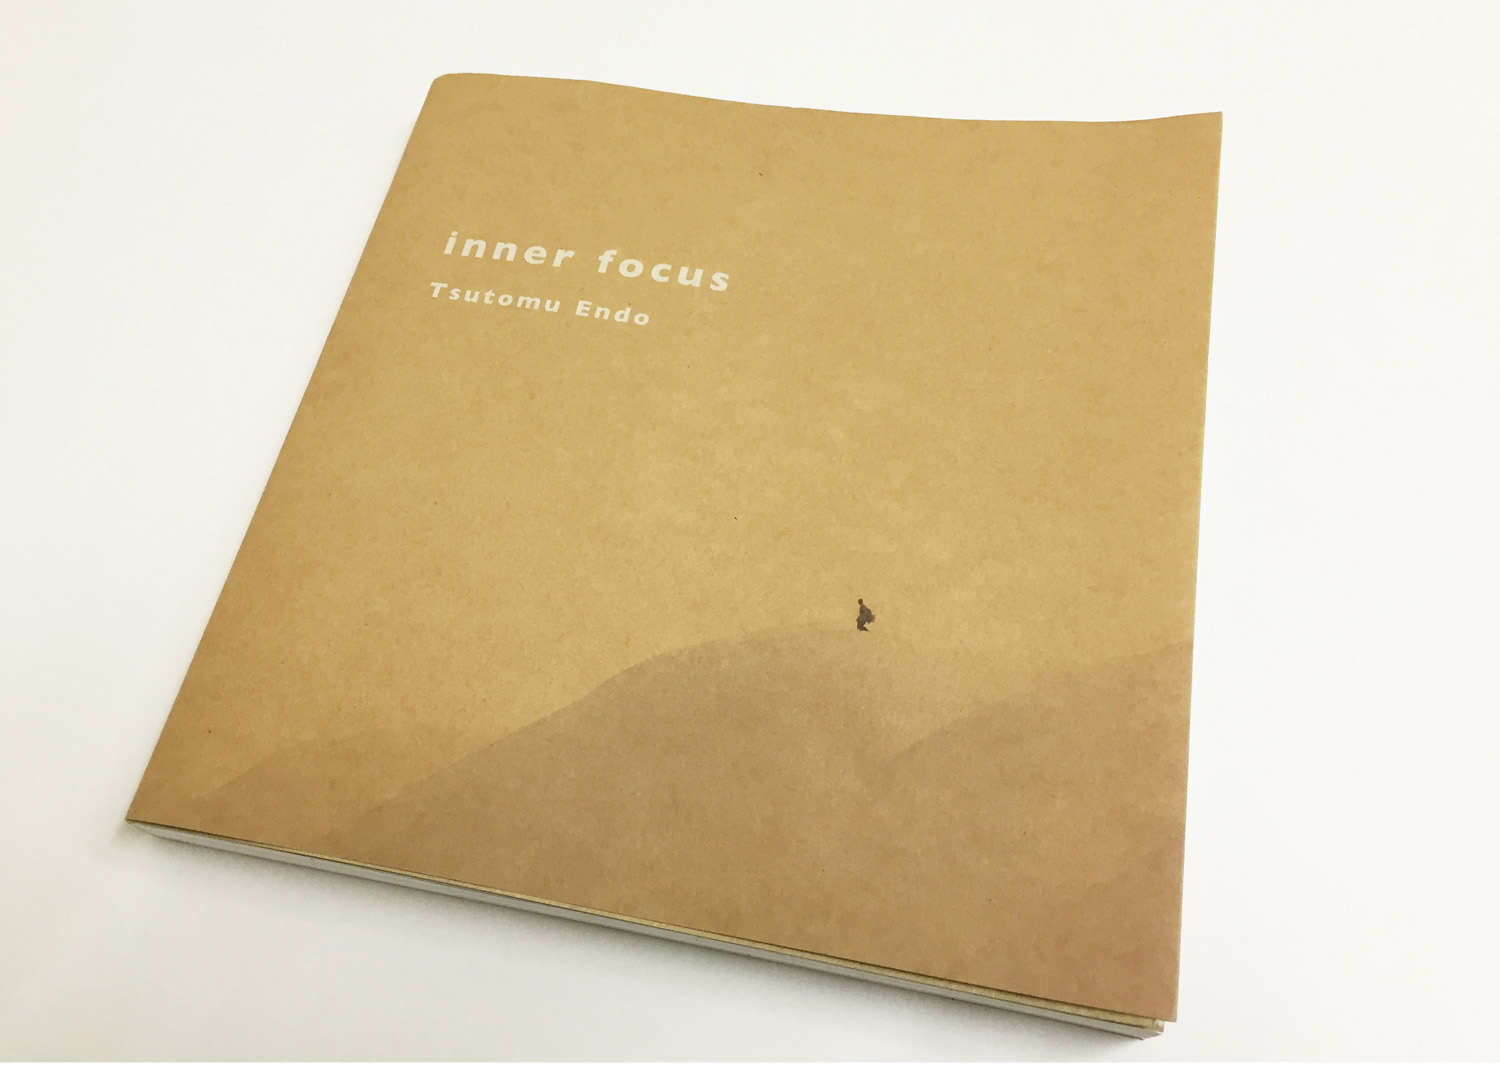 昨年11月20日に発売された写真家・遠藤 励氏の18年の集大成となった写真集。 inner focus サイズ: B4変形、頁数: 204ページ、価格: ¥4,200（税別）、出版: 小学館、問合せ先: 03-5281-3555